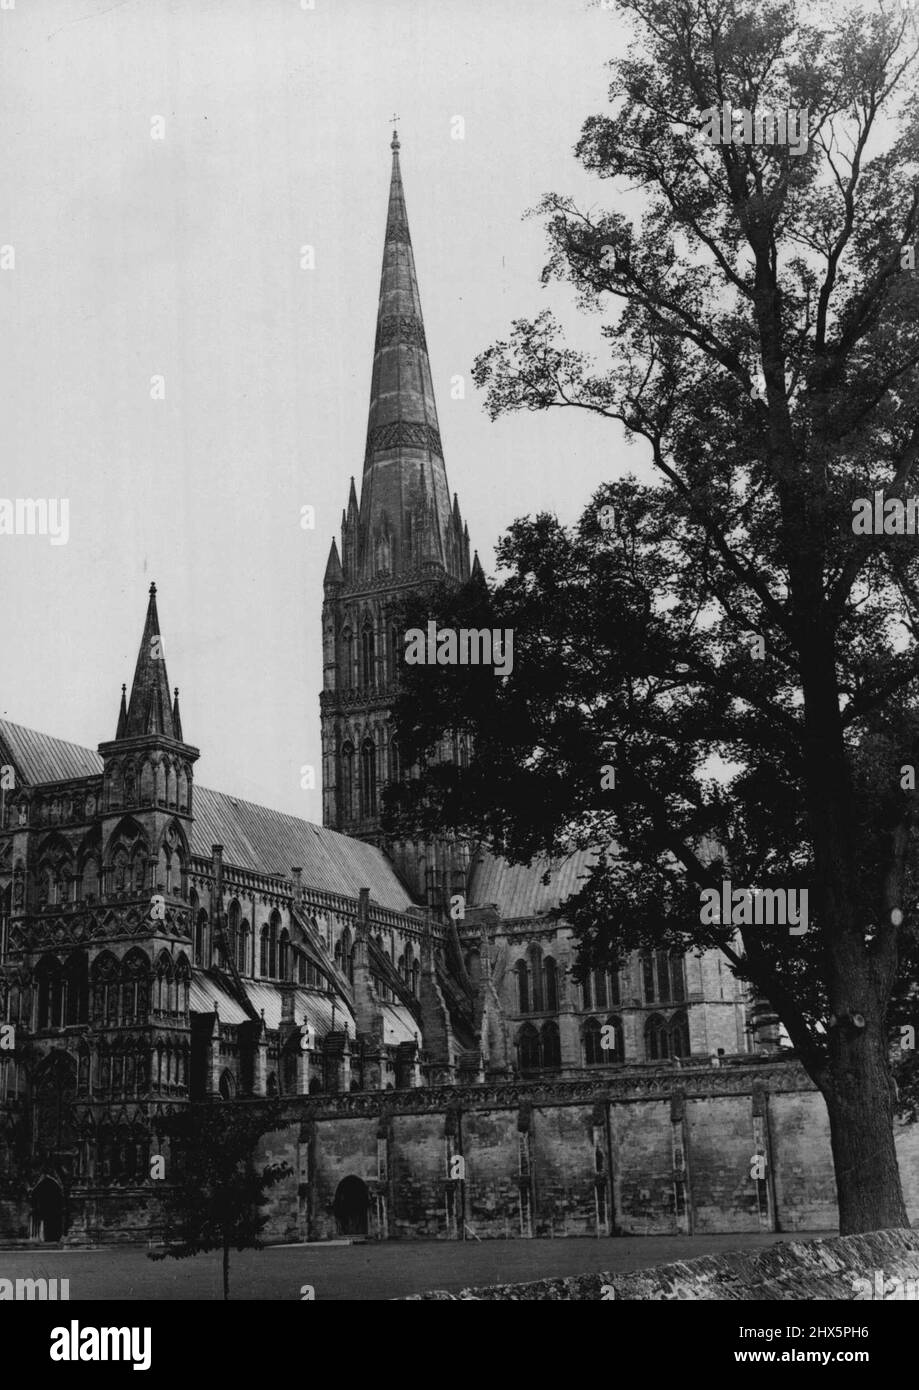 Opération de Steeplejack la plus dangereuse est terminée -- Une photographie de la cathédrale de Salisbury comme je l'ai vu aujourd'hui après que les travaux de reconstruction et de restauration de la flèche ont été terminés et tous les échafaudages ont été enlevés. Ce qui est devenu connu comme 'l'opération de steeplejack la plus dangereuse et la plus difficile de ce siècle' a été achevé aujourd'hui quand M. Alfred Wallbridge et son équipe de steeplejack ont gravi la flèche de la cathédrale de Salisbury, à 404 pieds de hauteur, pour la dernière fois. 07 septembre 1951. (Photo de Paul Popper Ltd.). Banque D'Images